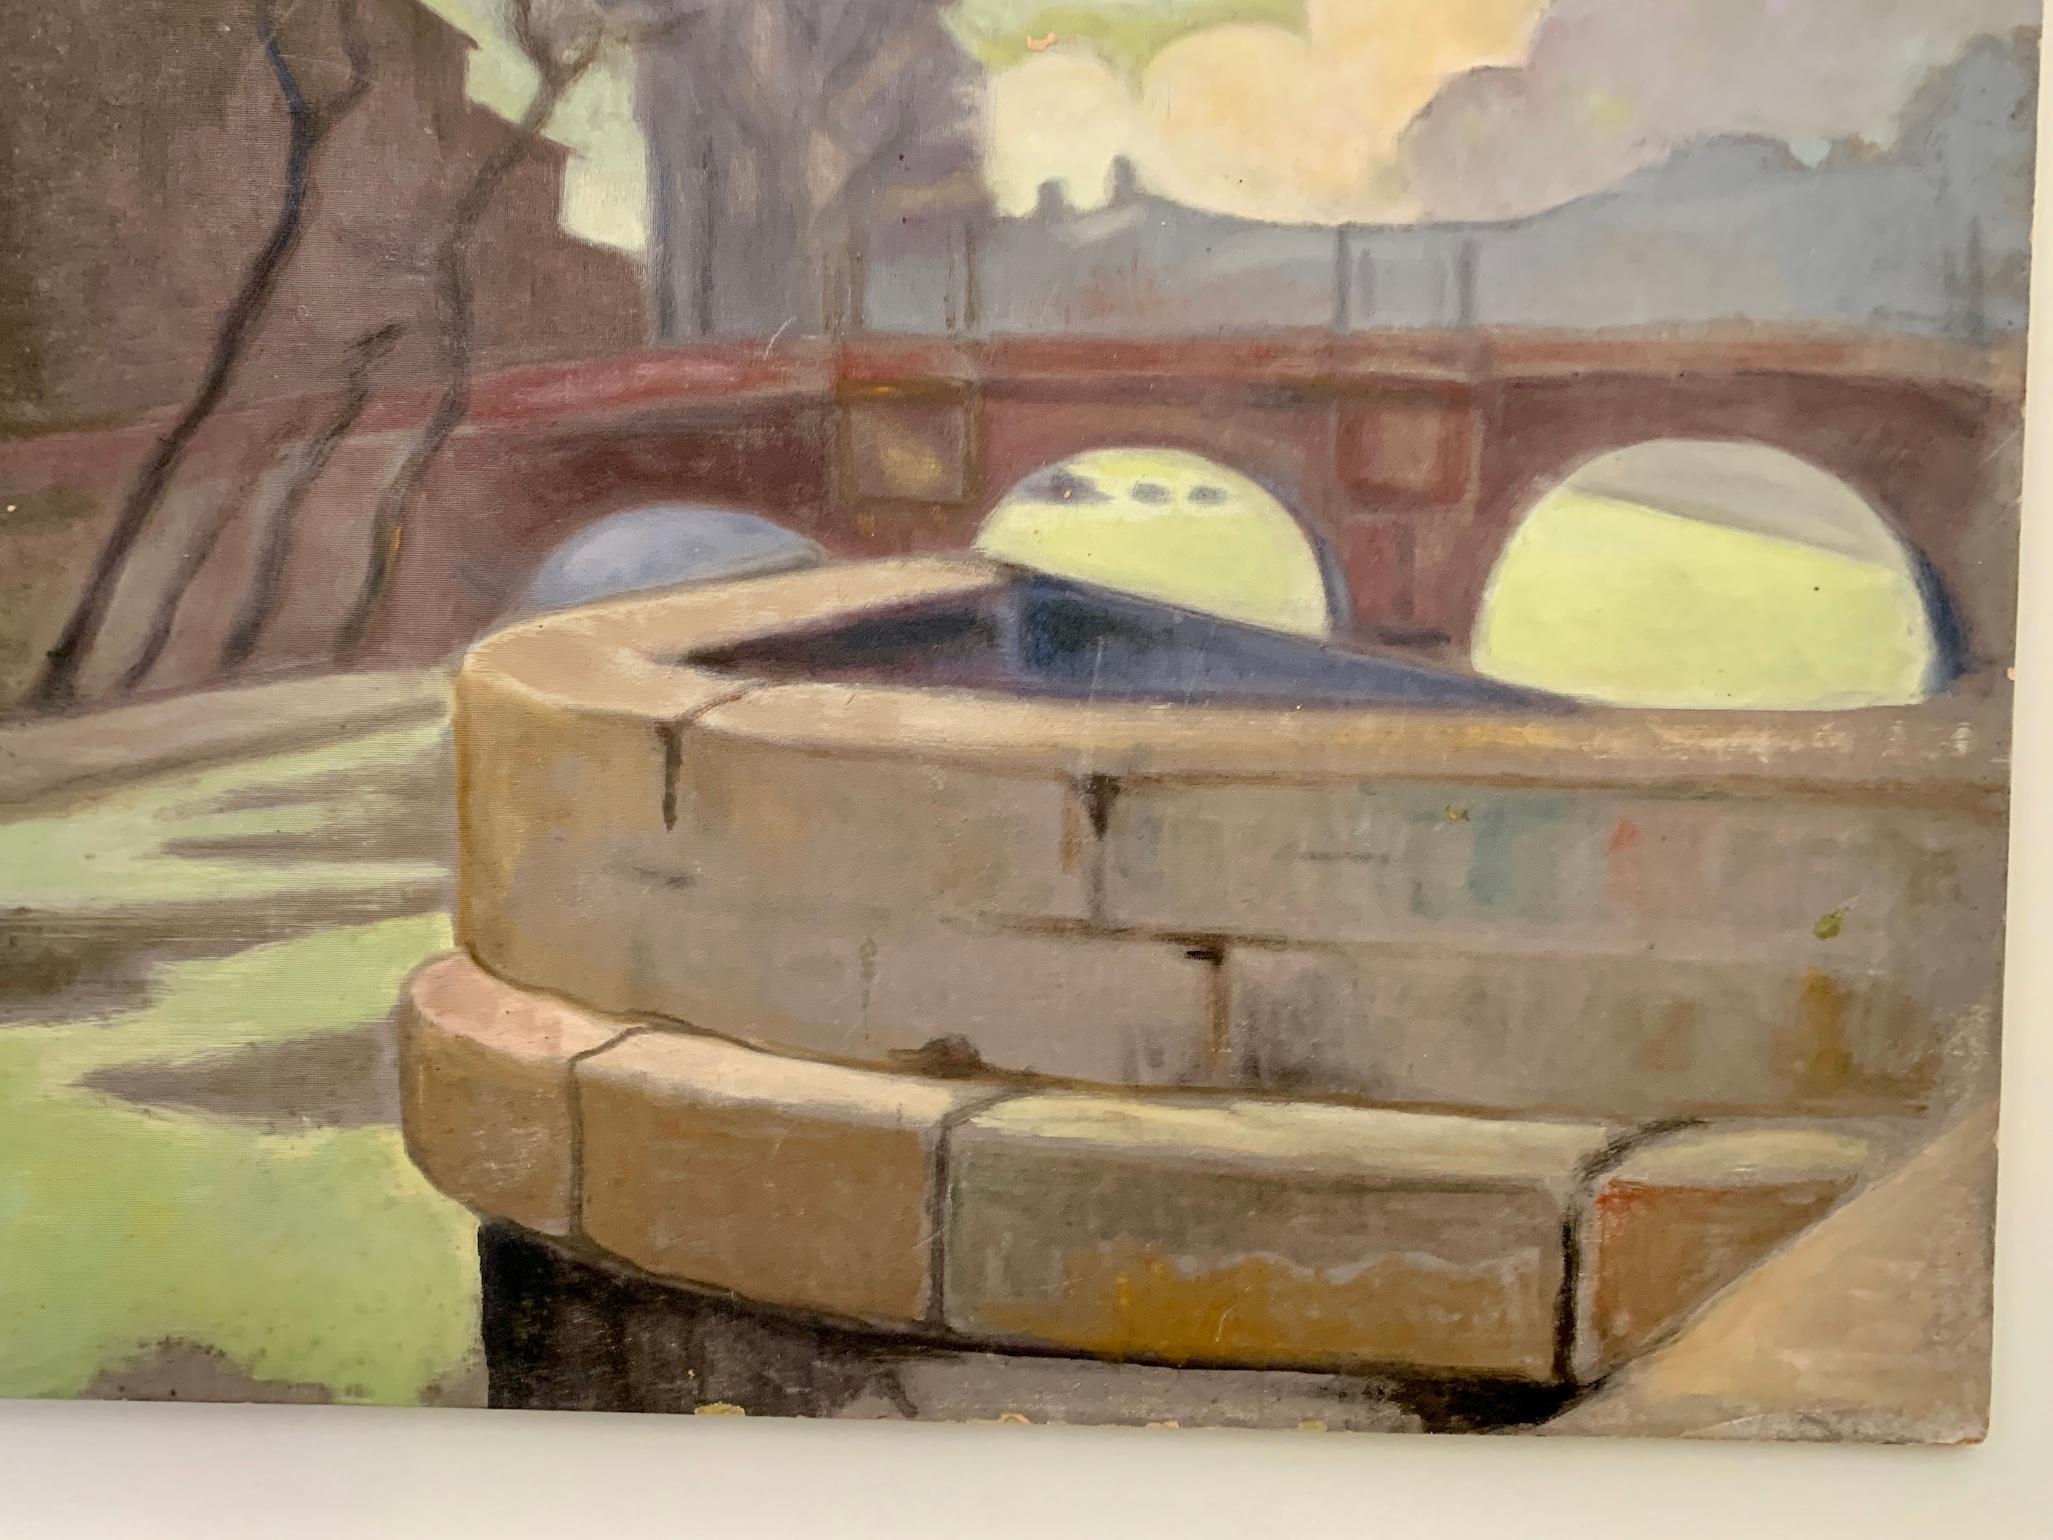 Ausgezeichnetes Ölgemälde der Pariser Schule aus der Mitte des 20. Jahrhunderts, das eine Szene am Ufer der Seine in Paris, Frankreich, zeigt.

Der Maler war um die Mitte des 20. Jahrhunderts tätig und malte Landschaften, Porträts und Stadtszenen.